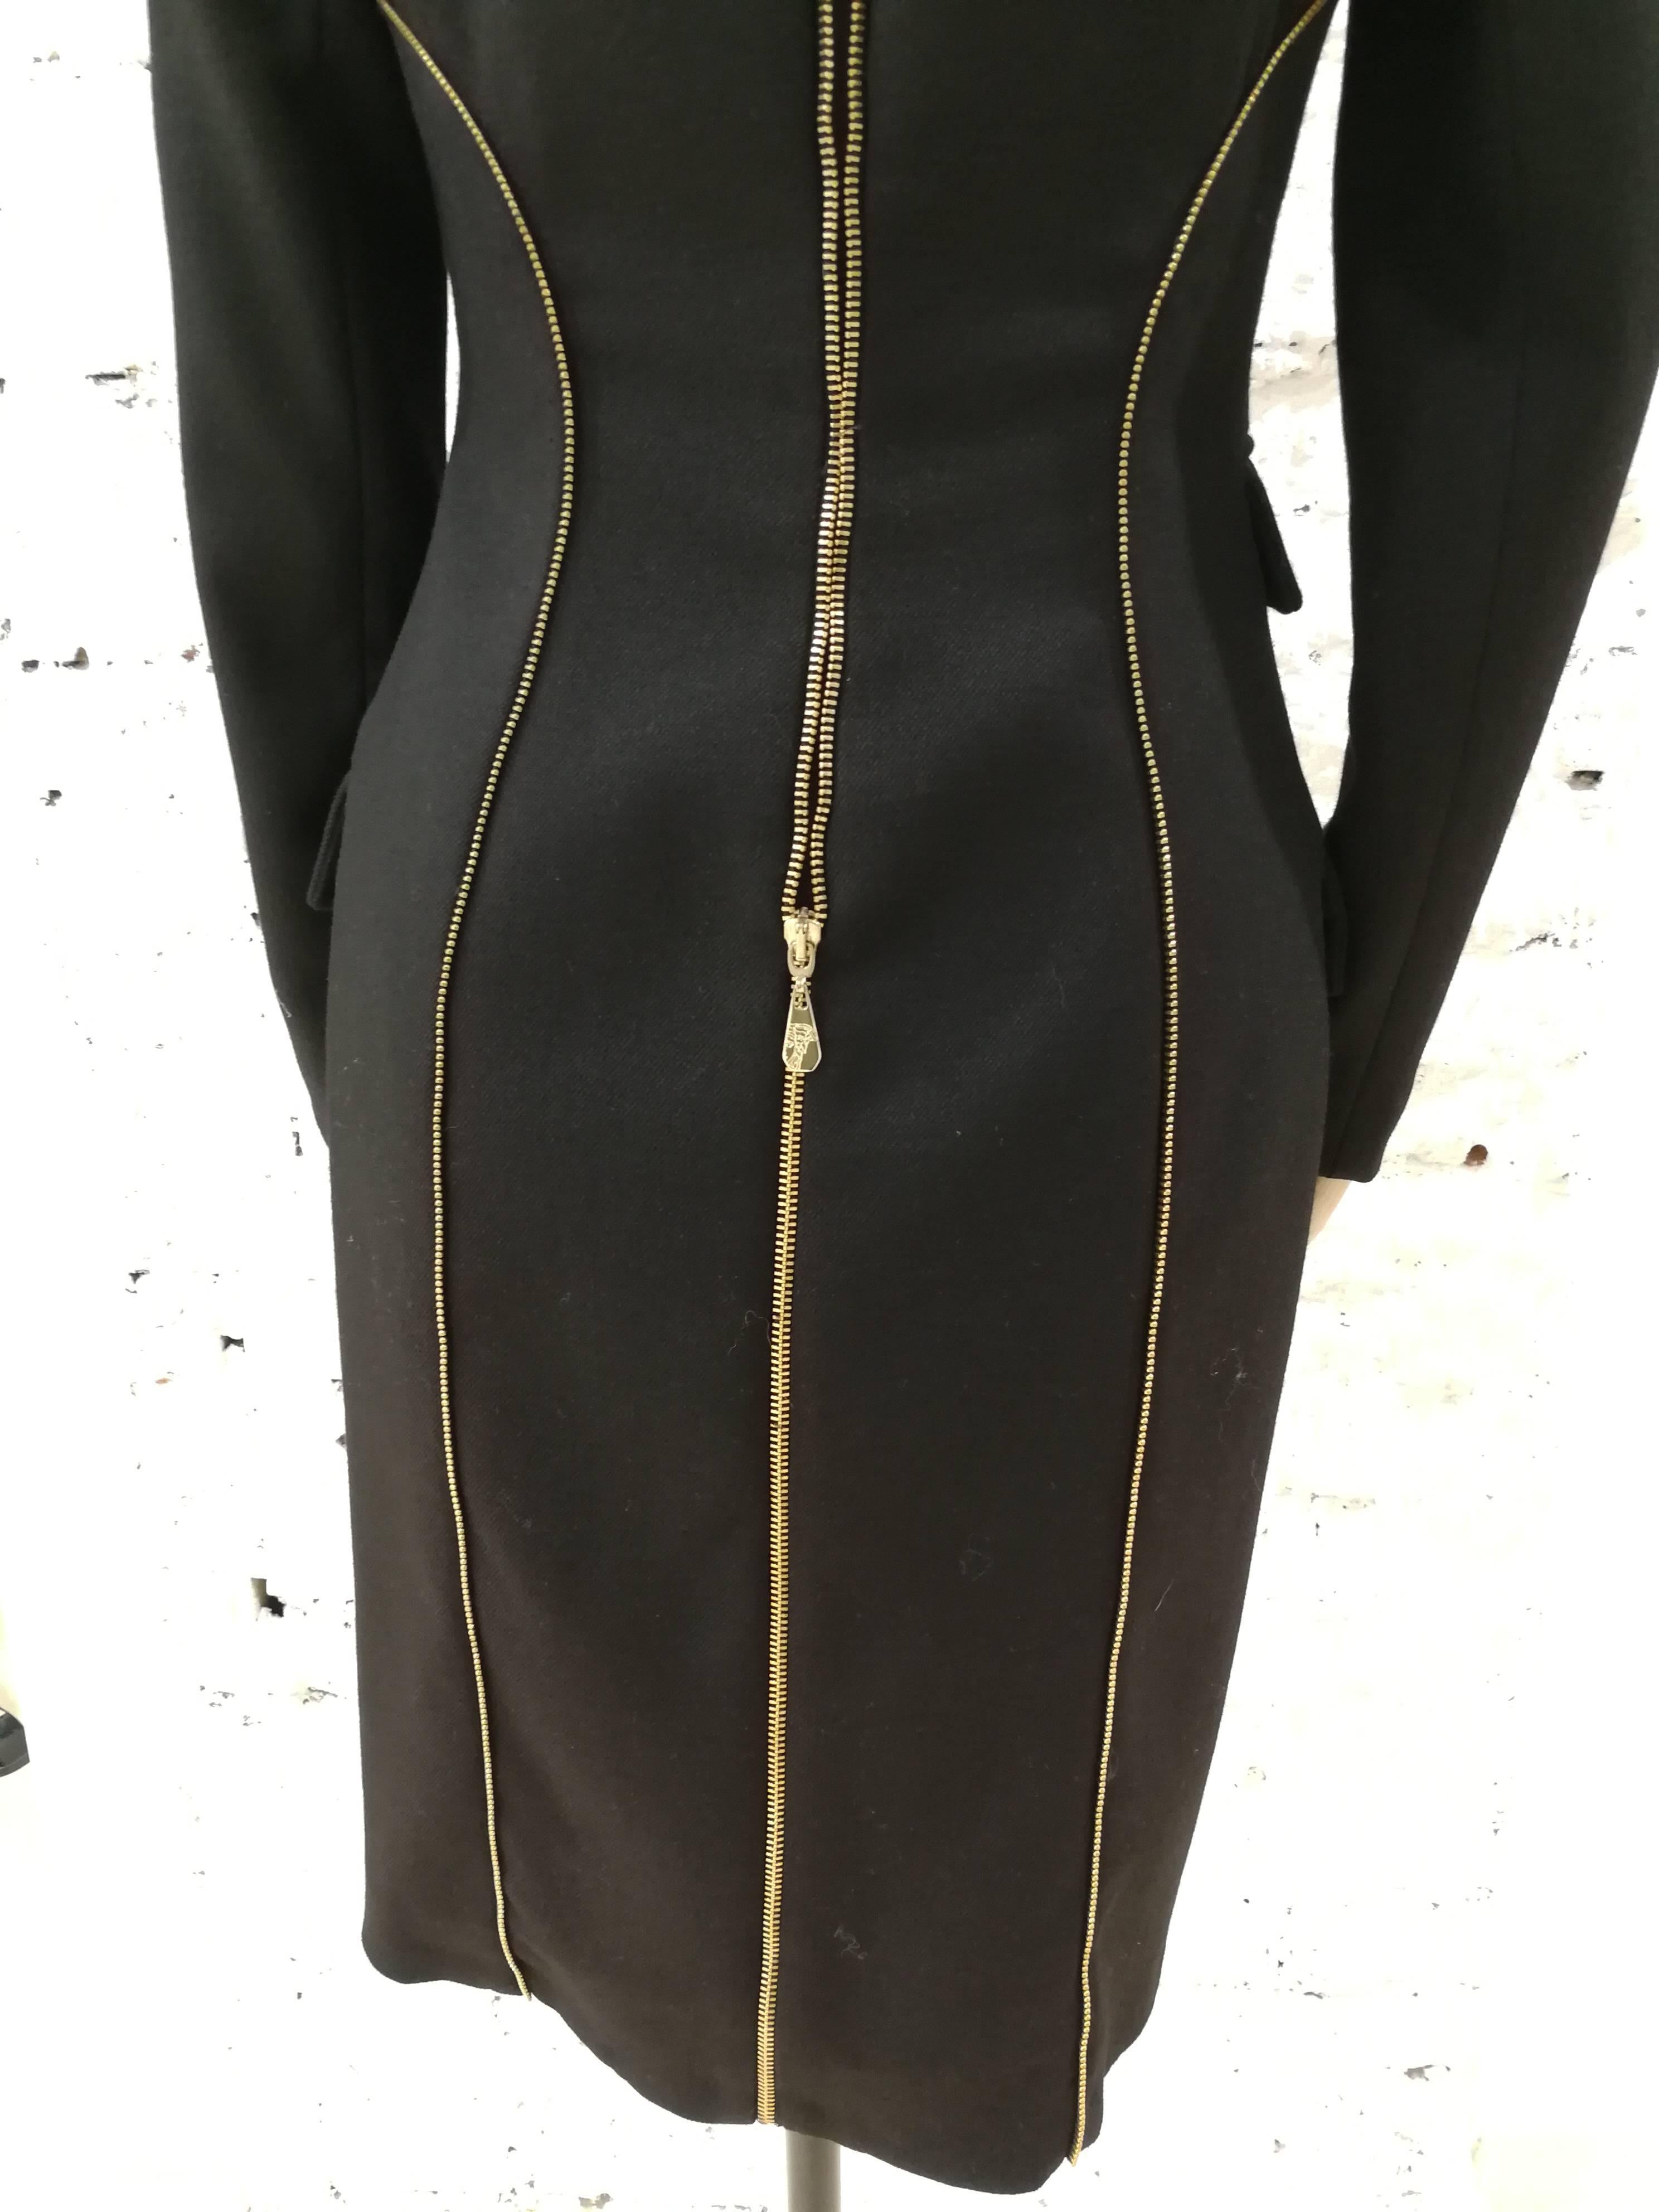 Versace Schwarzer Wollmantel mit goldfarbenem Reißverschluss 
Das Label von Versace wurde zuvor aus der Jacke herausgeschnitten, aber die Knöpfe mit dem Medusa-Logo von Versace bleiben intakt. 

Versace schwarz Baumwolle mit Gold Tone